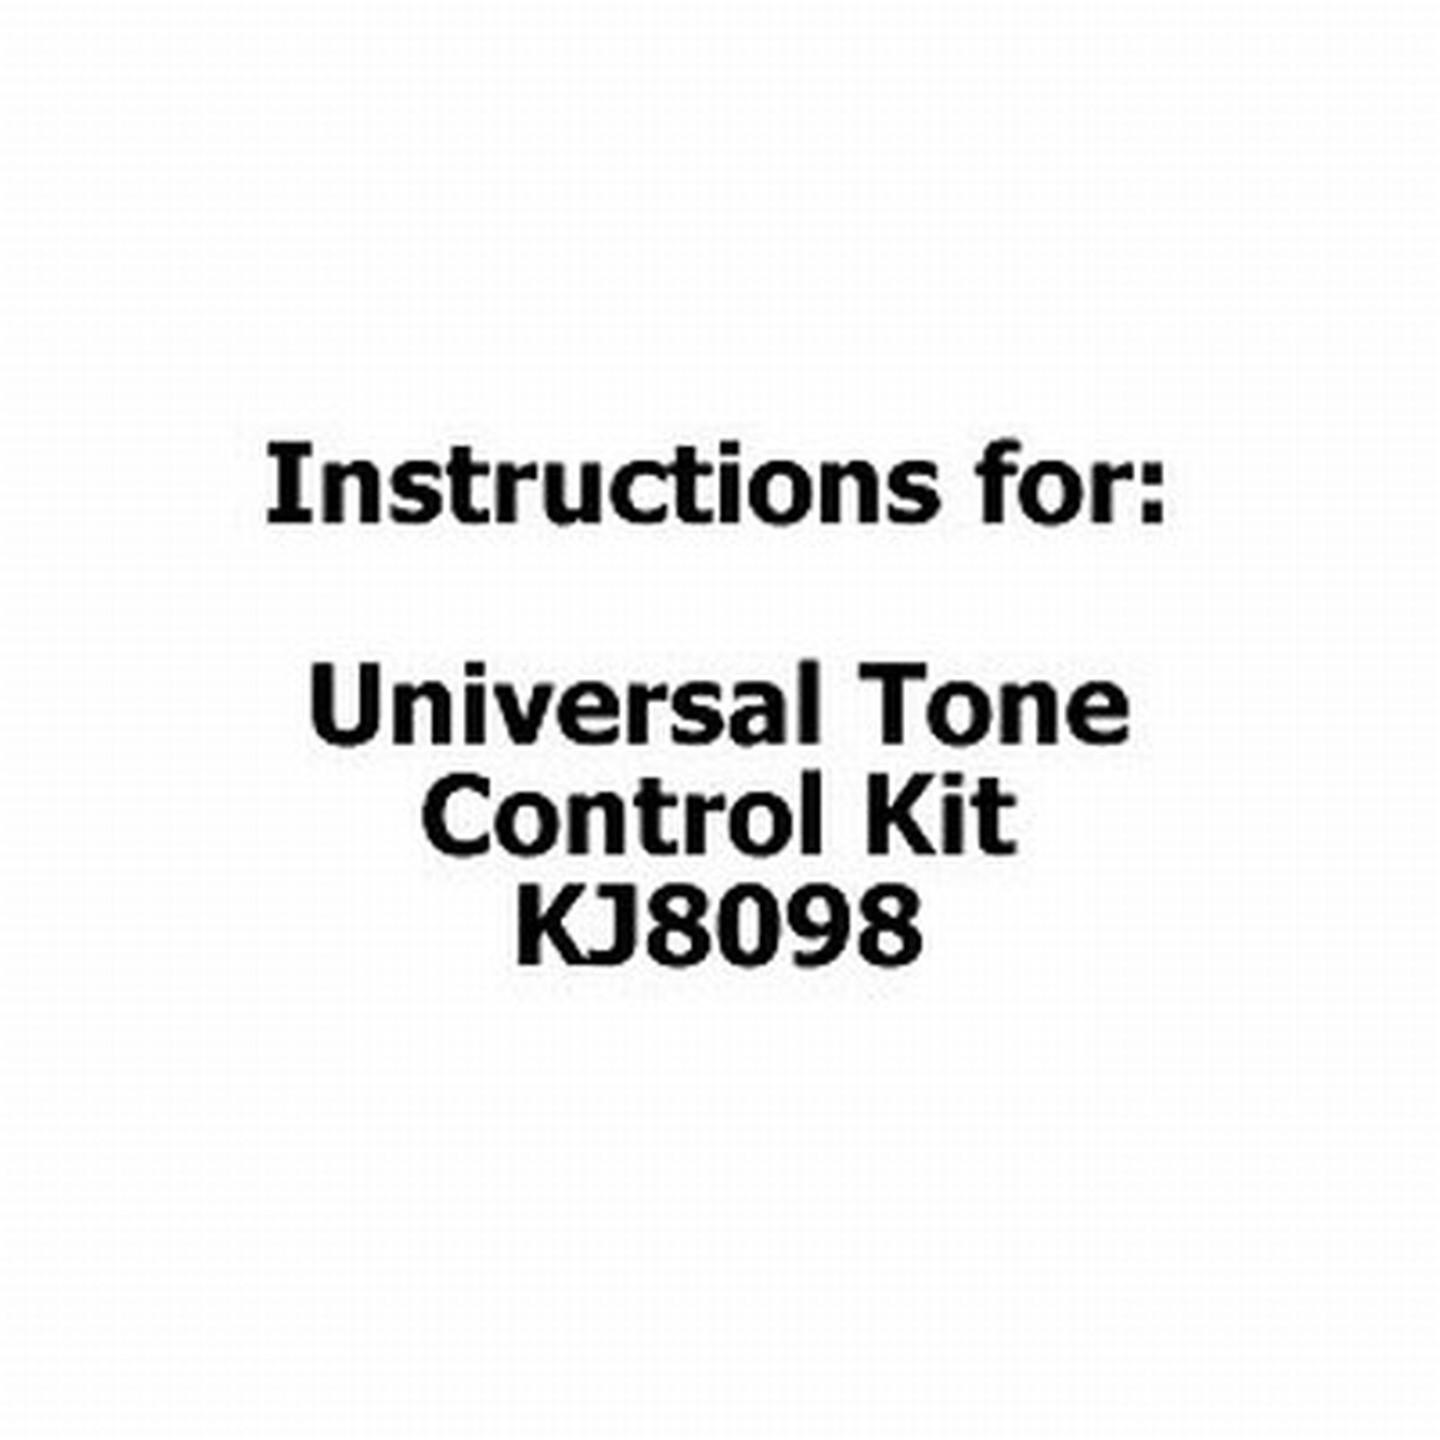 Instructions for Universal Tone Control Kit - KJ8098